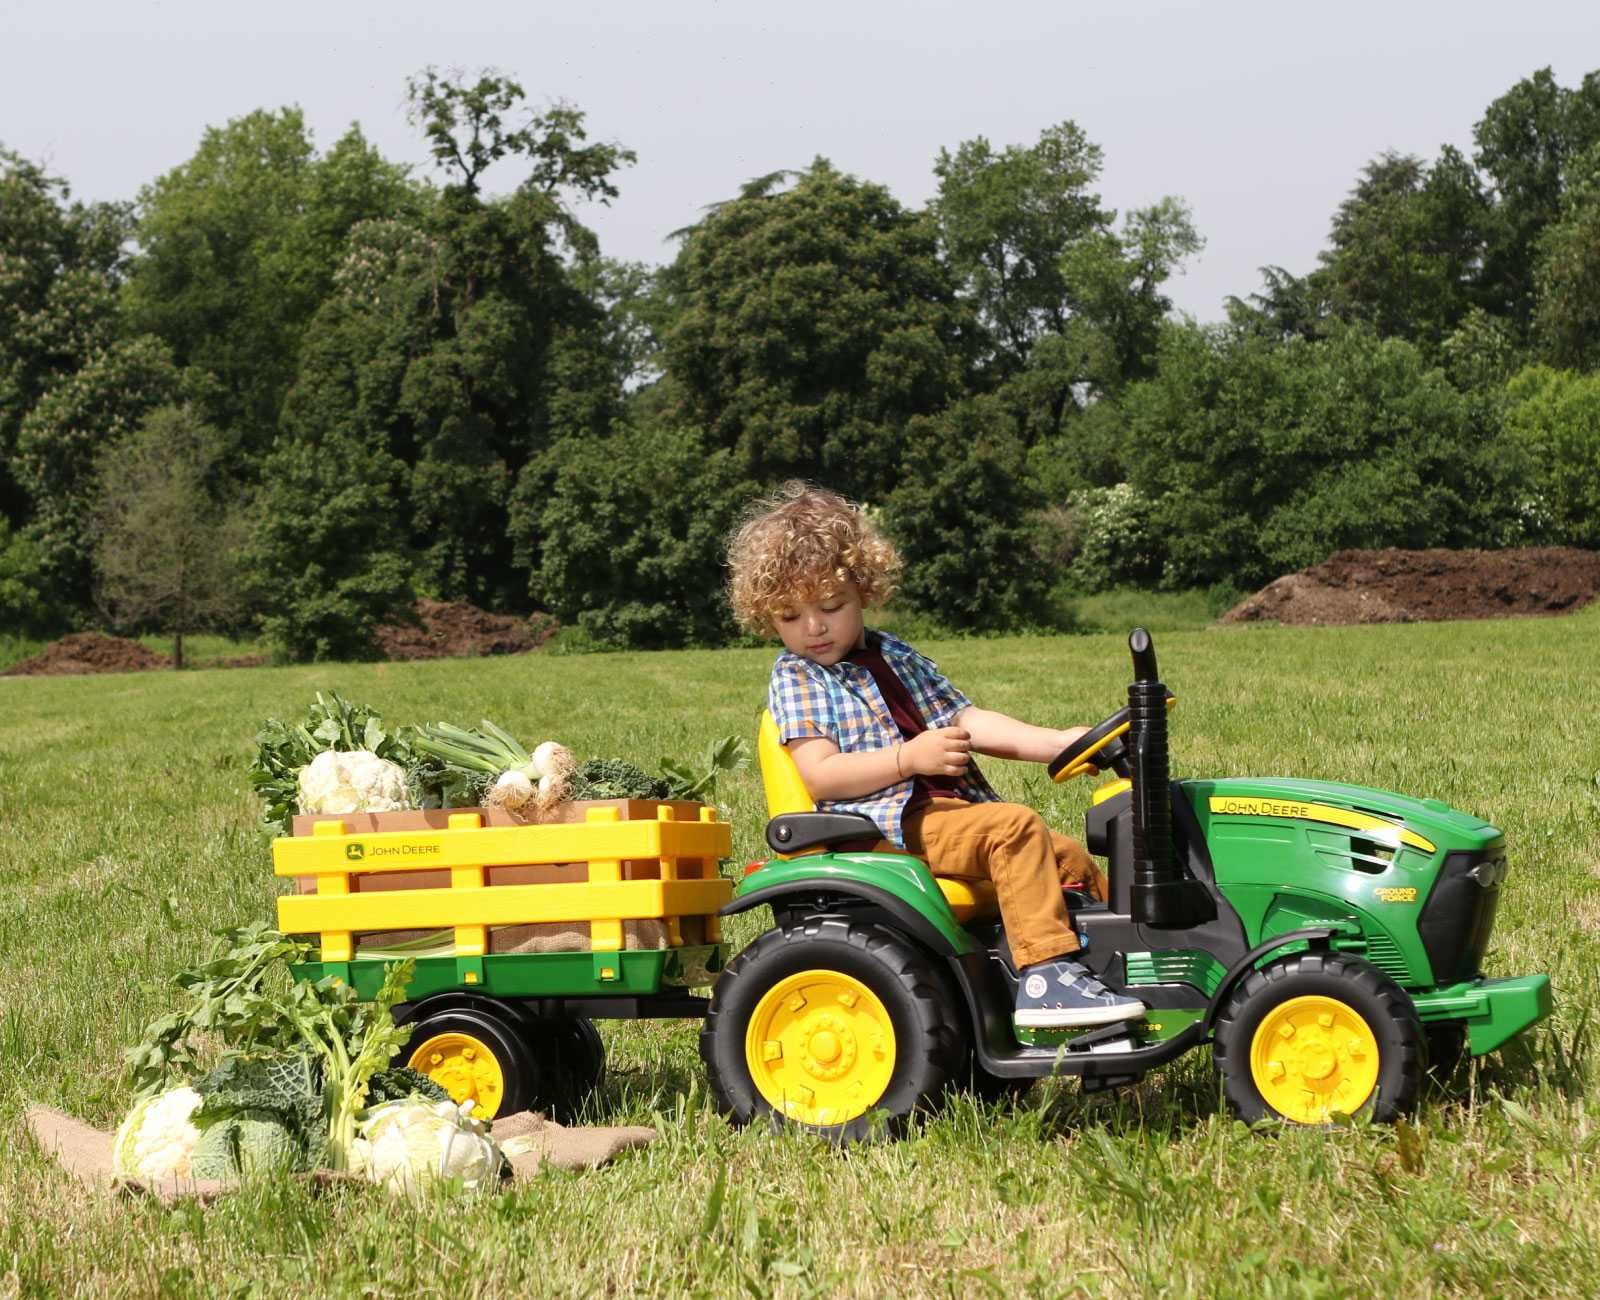 Peg Perego JOHN DEERE traktor dla dzieci.Na wysyłkę Auto na akumulator